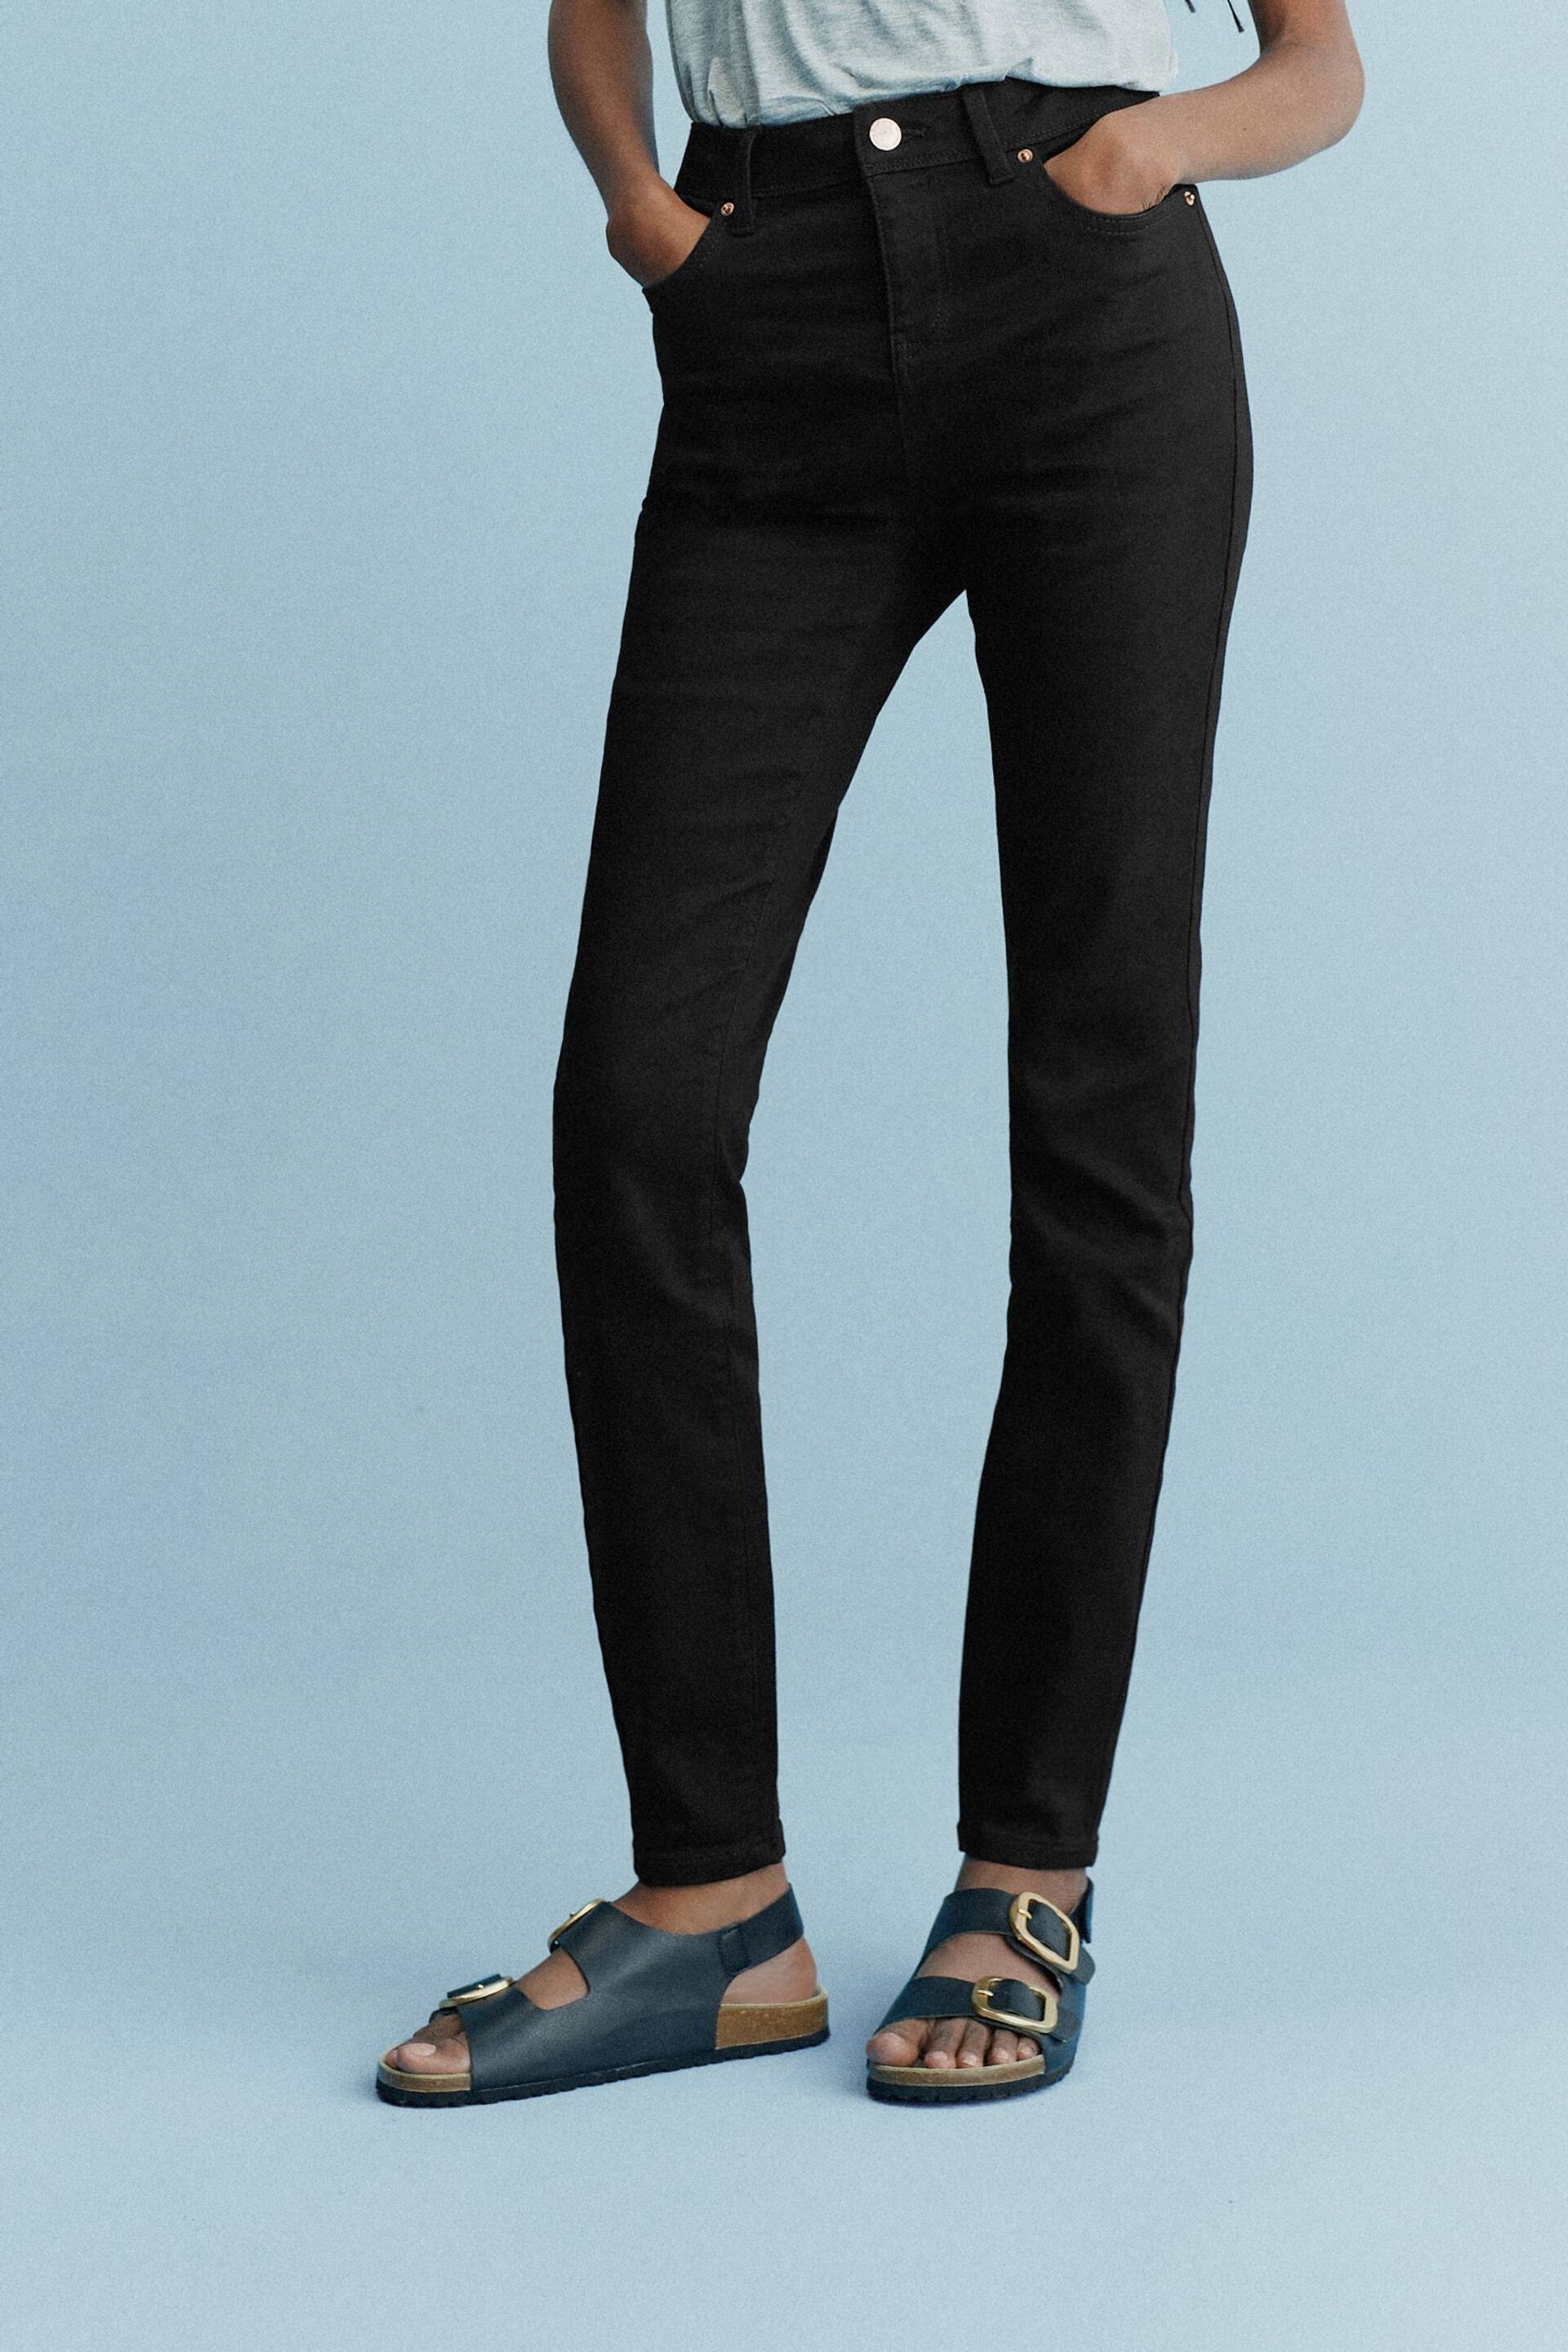 Black Denim Skinny Jeans - Image 3 of 5